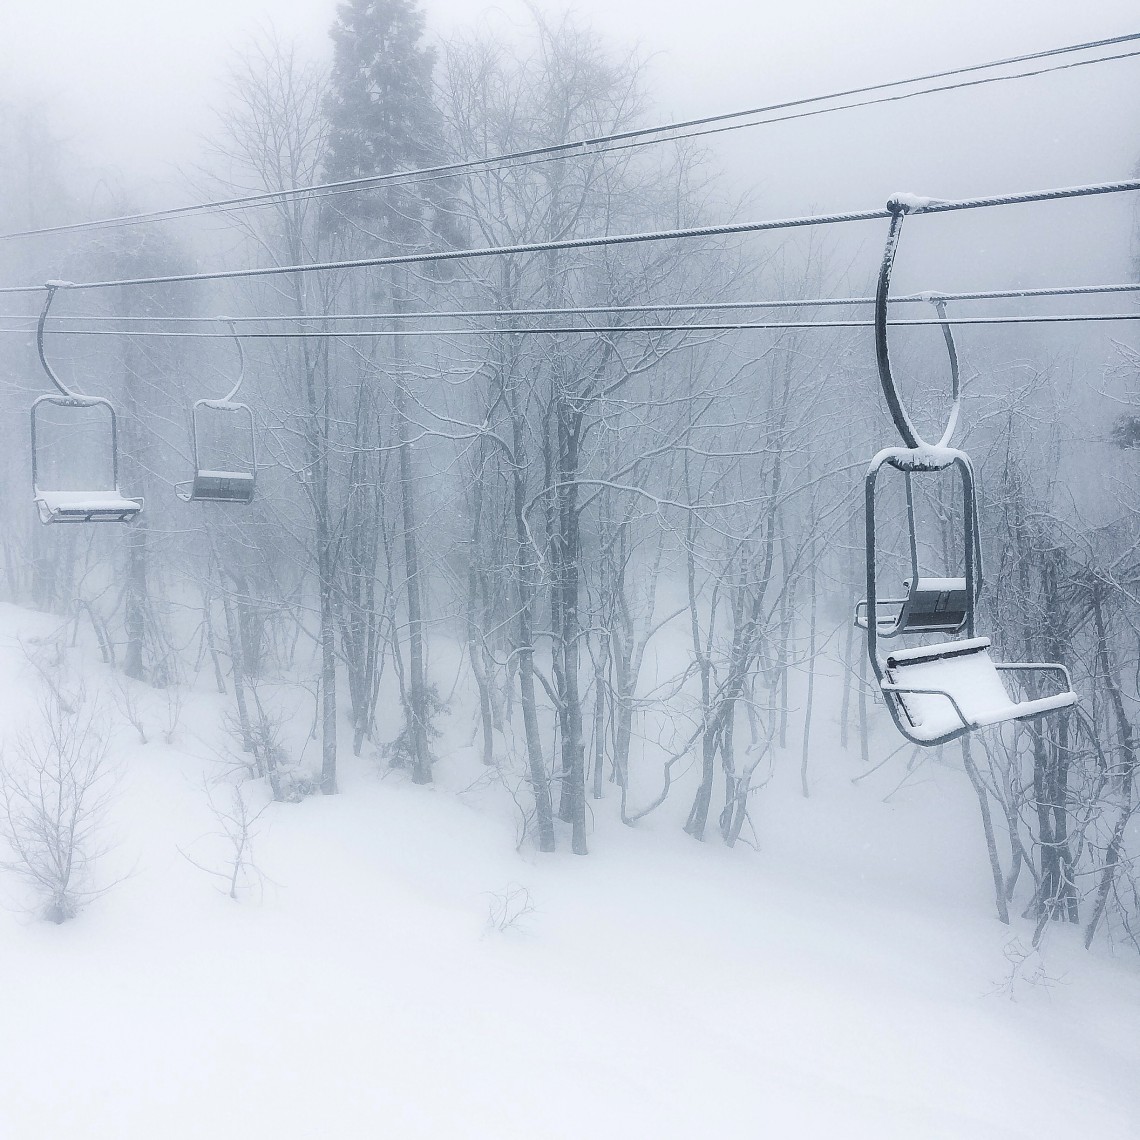 Chairlift In Snow - Tsugaike Kogen